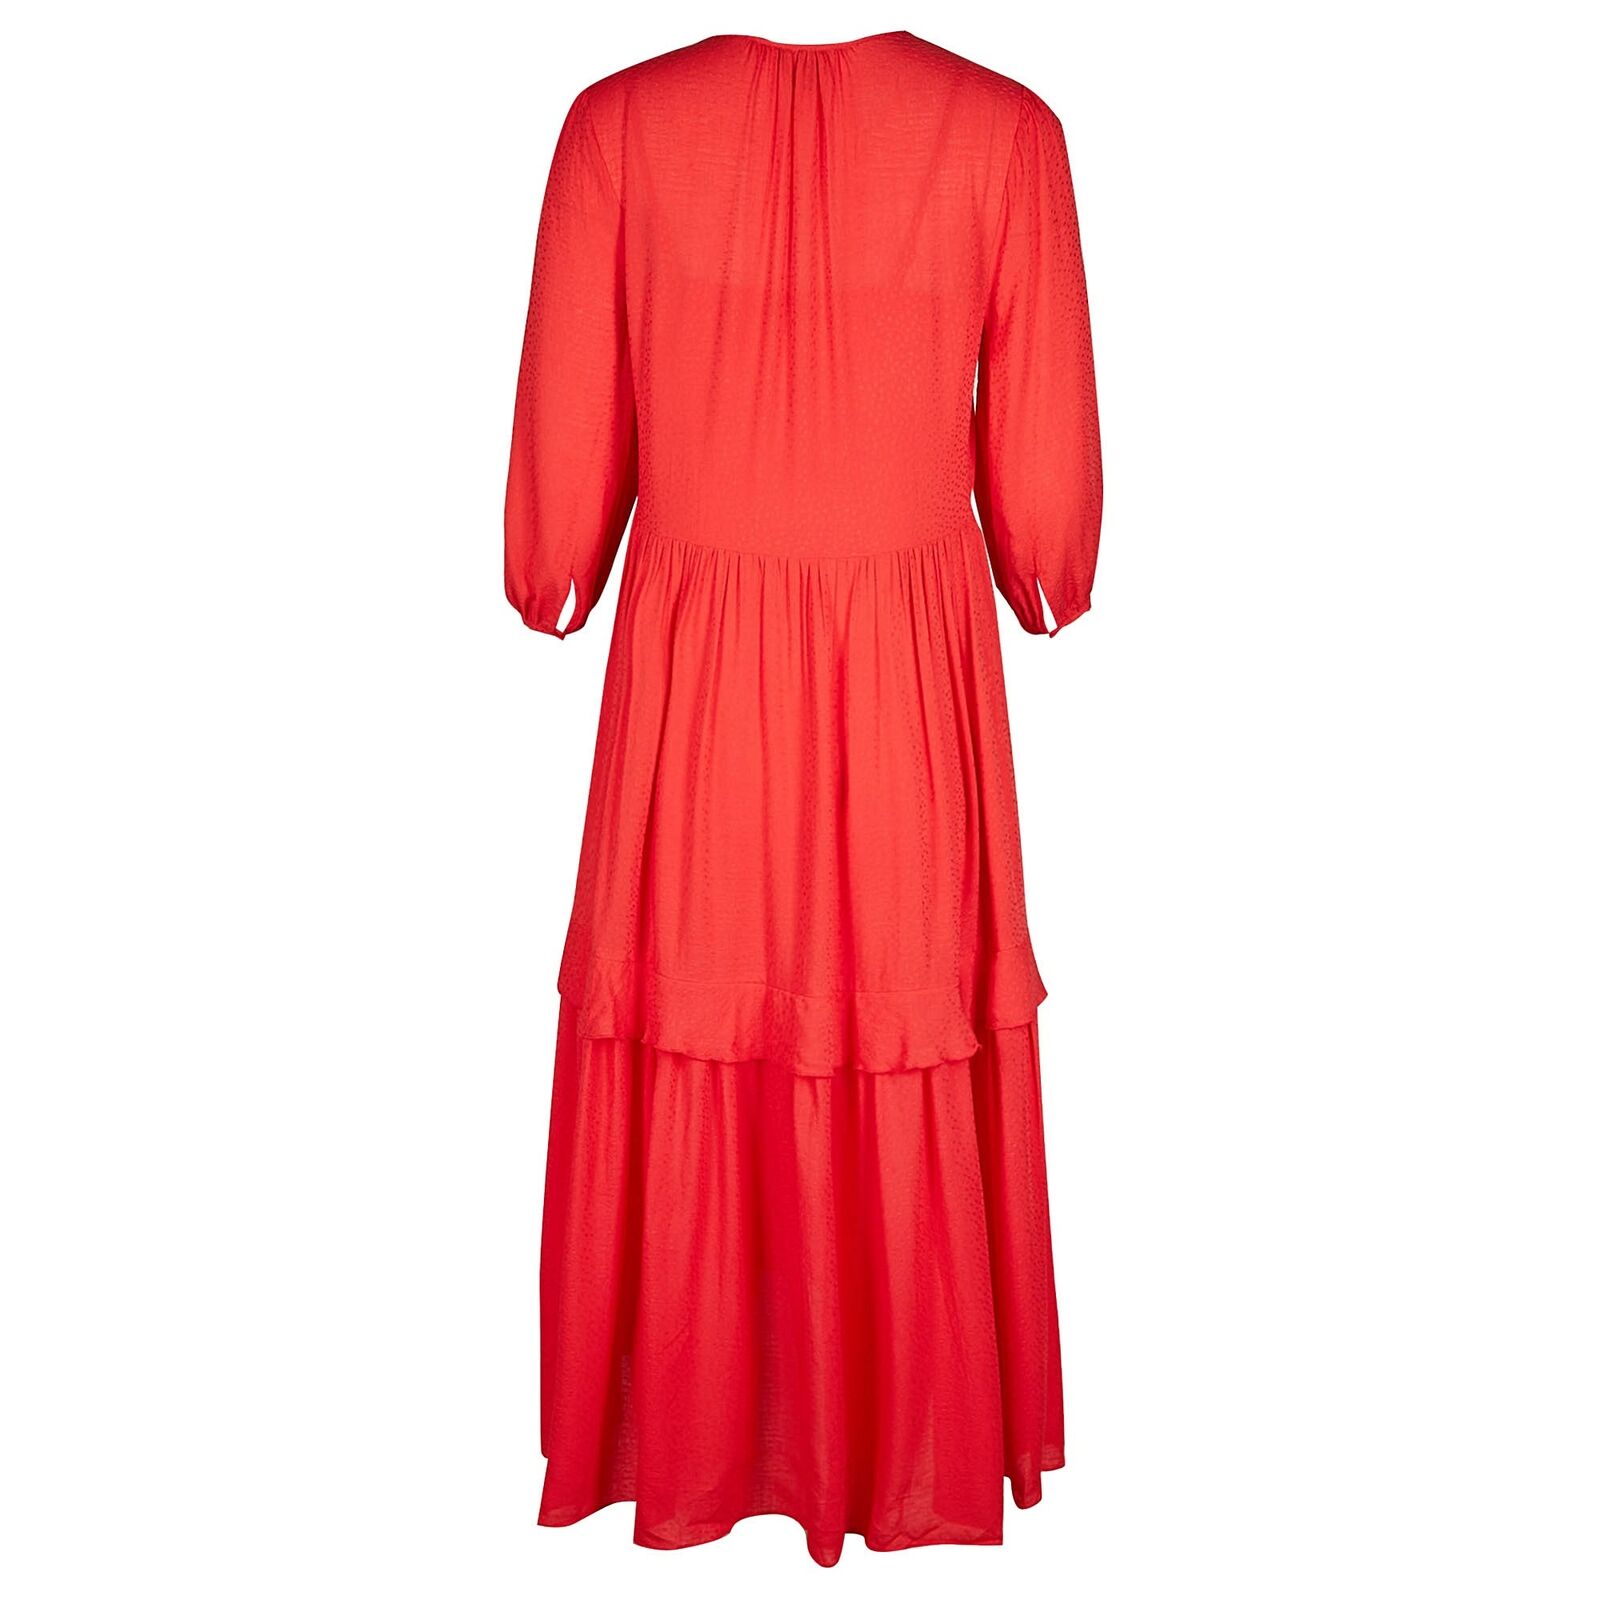 Oliver Bonas + Jacquard Spot & Pleat Detail Red Tiered Midi Dress